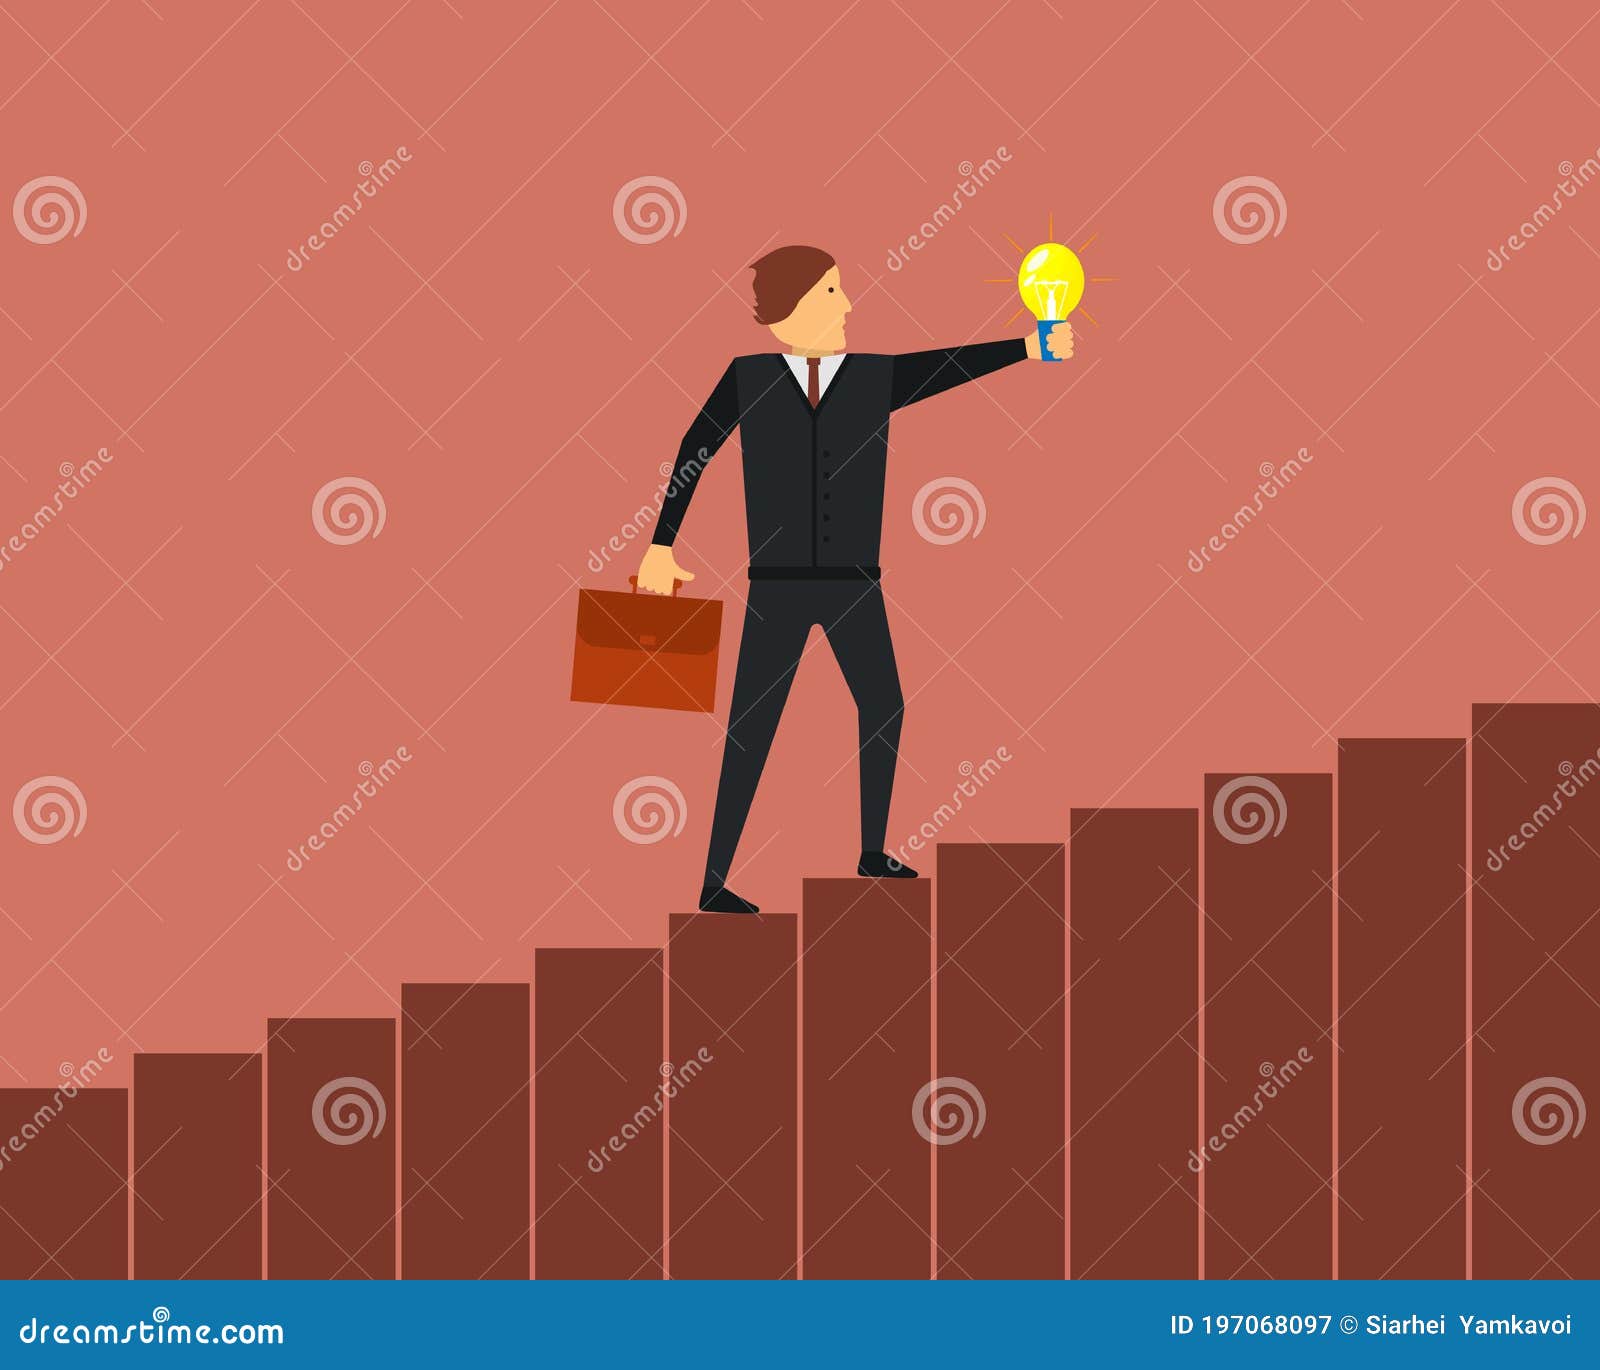 ÃÅ¾ffice worker, employee or businessman in a suit is climbing career ladder up the steps with a light bulb in his hand.